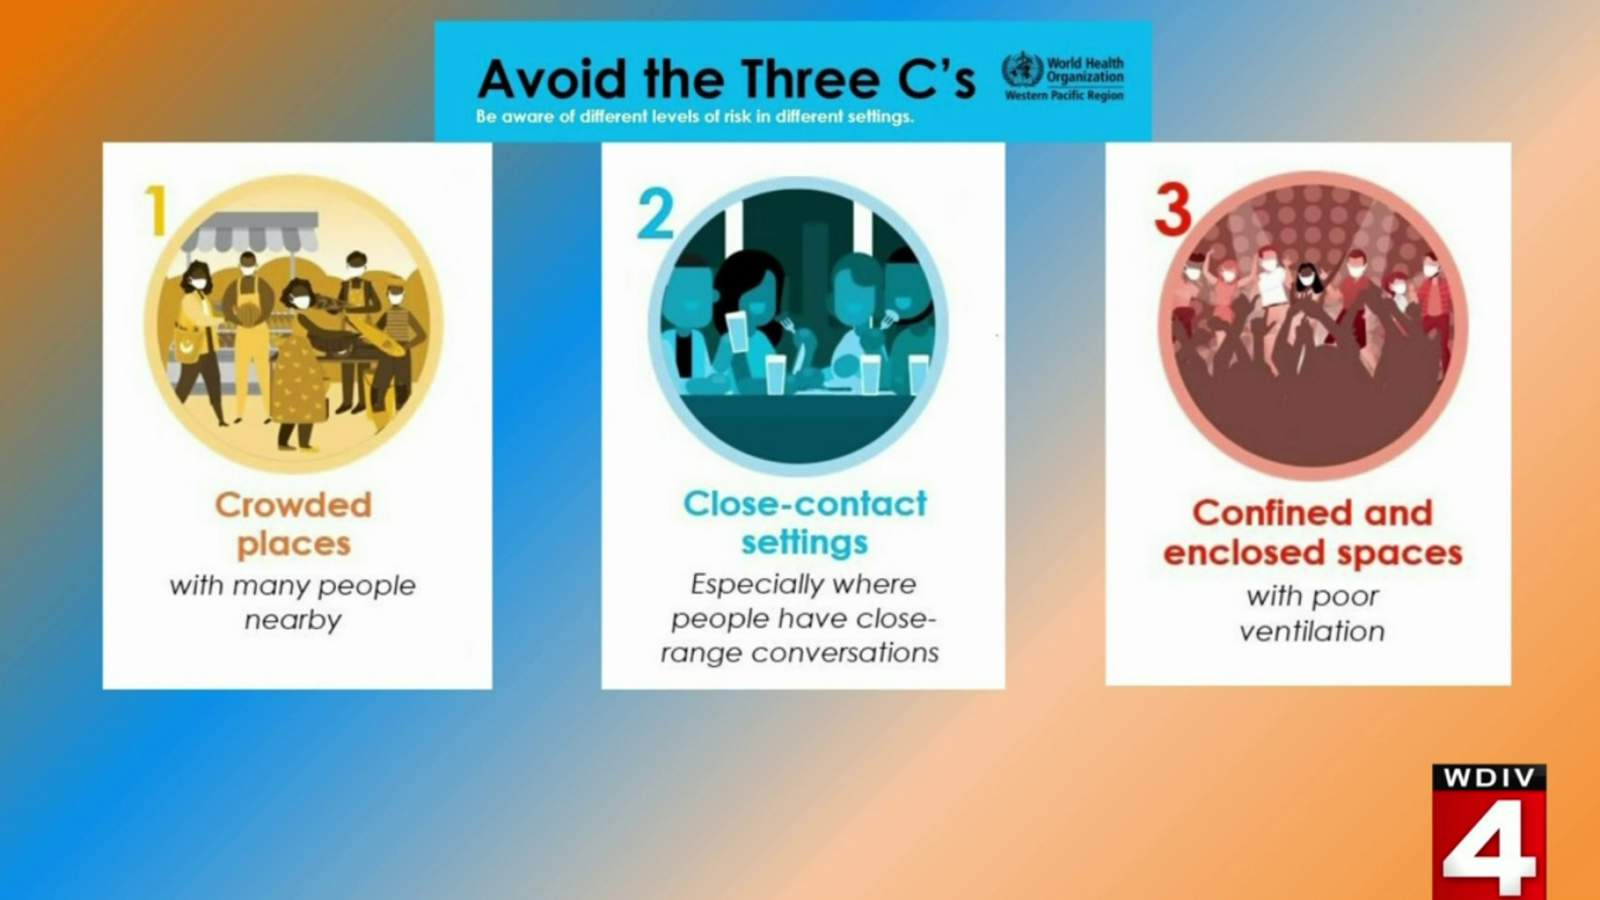 Avoid the Three Cs to help stop spread of coronavirus